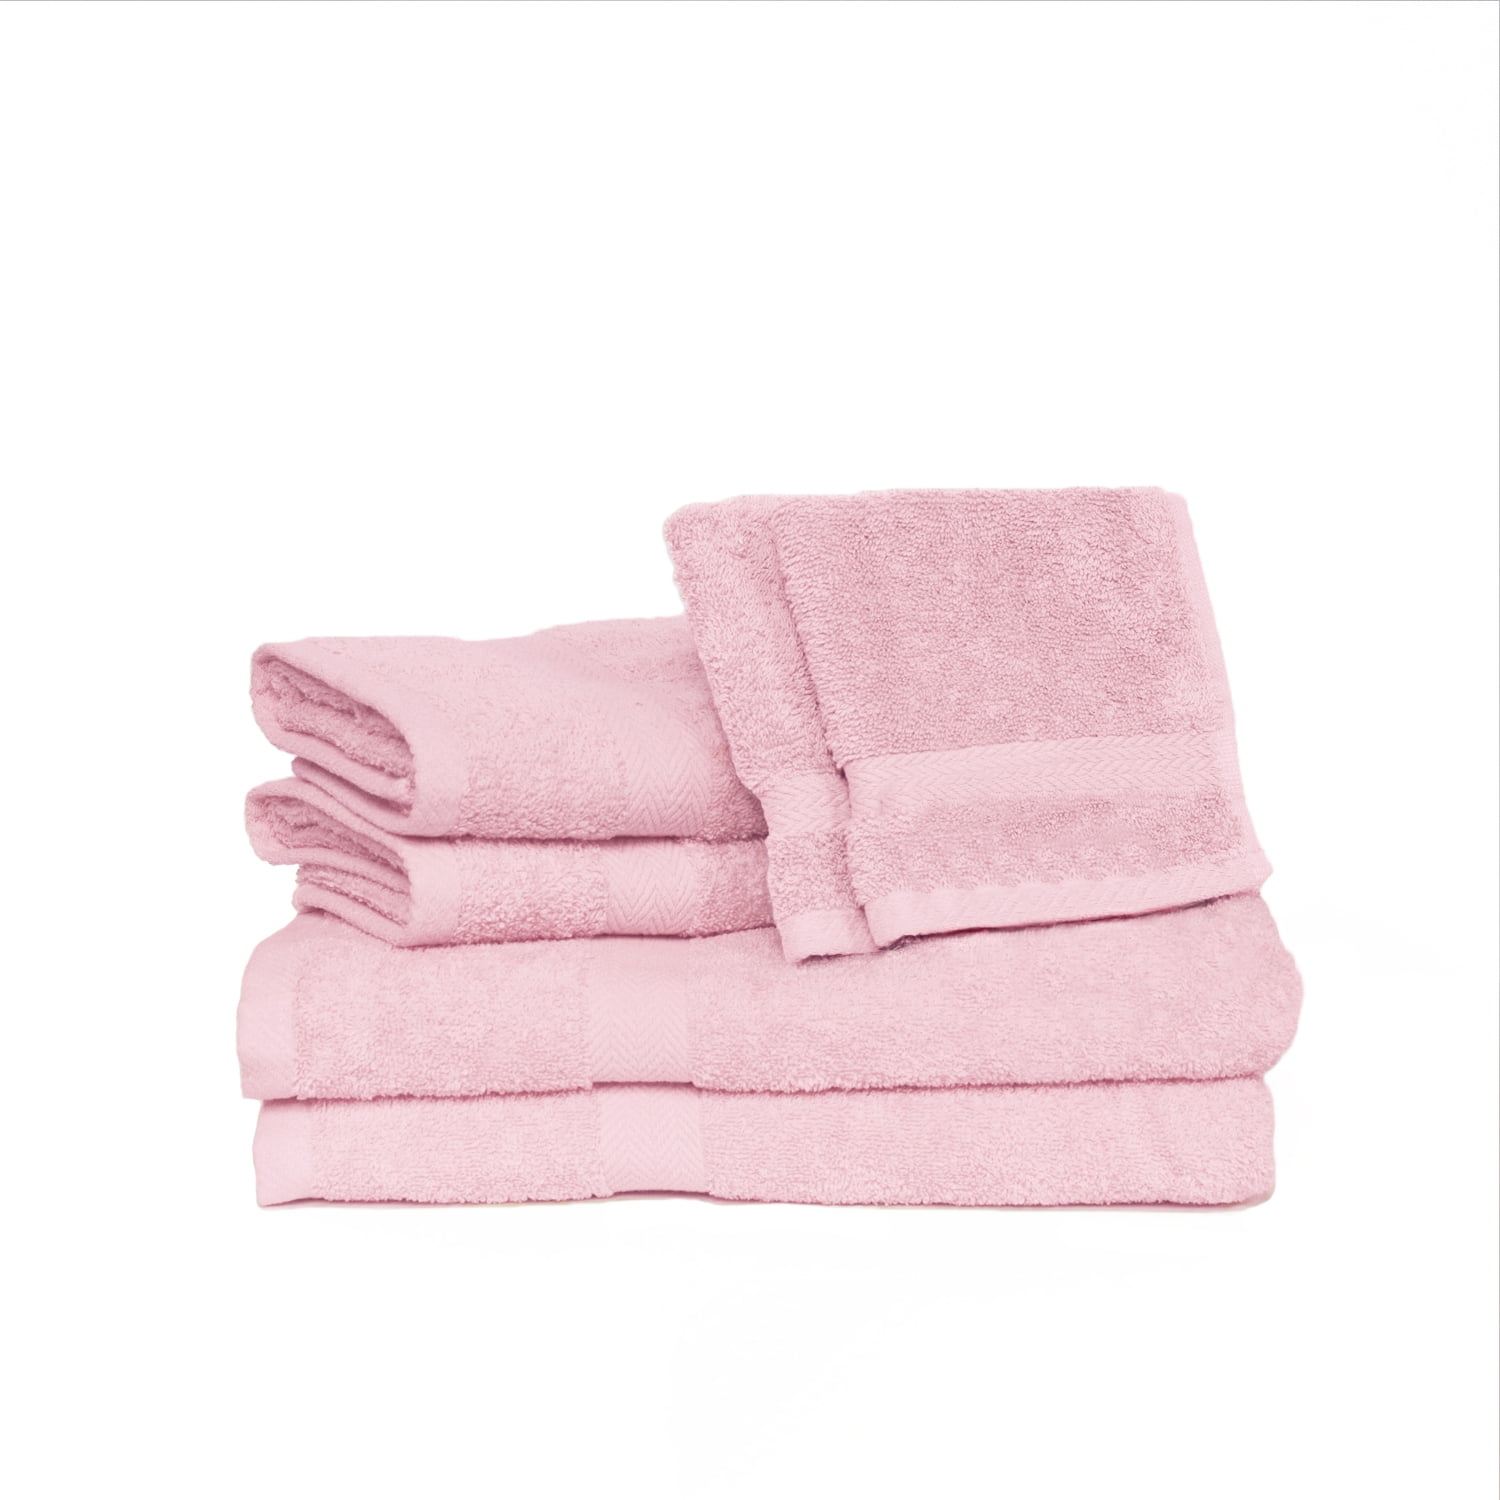 Deluxe Basics 6-Piece Solid Luxury Towel Set, Pink - Walmart.com